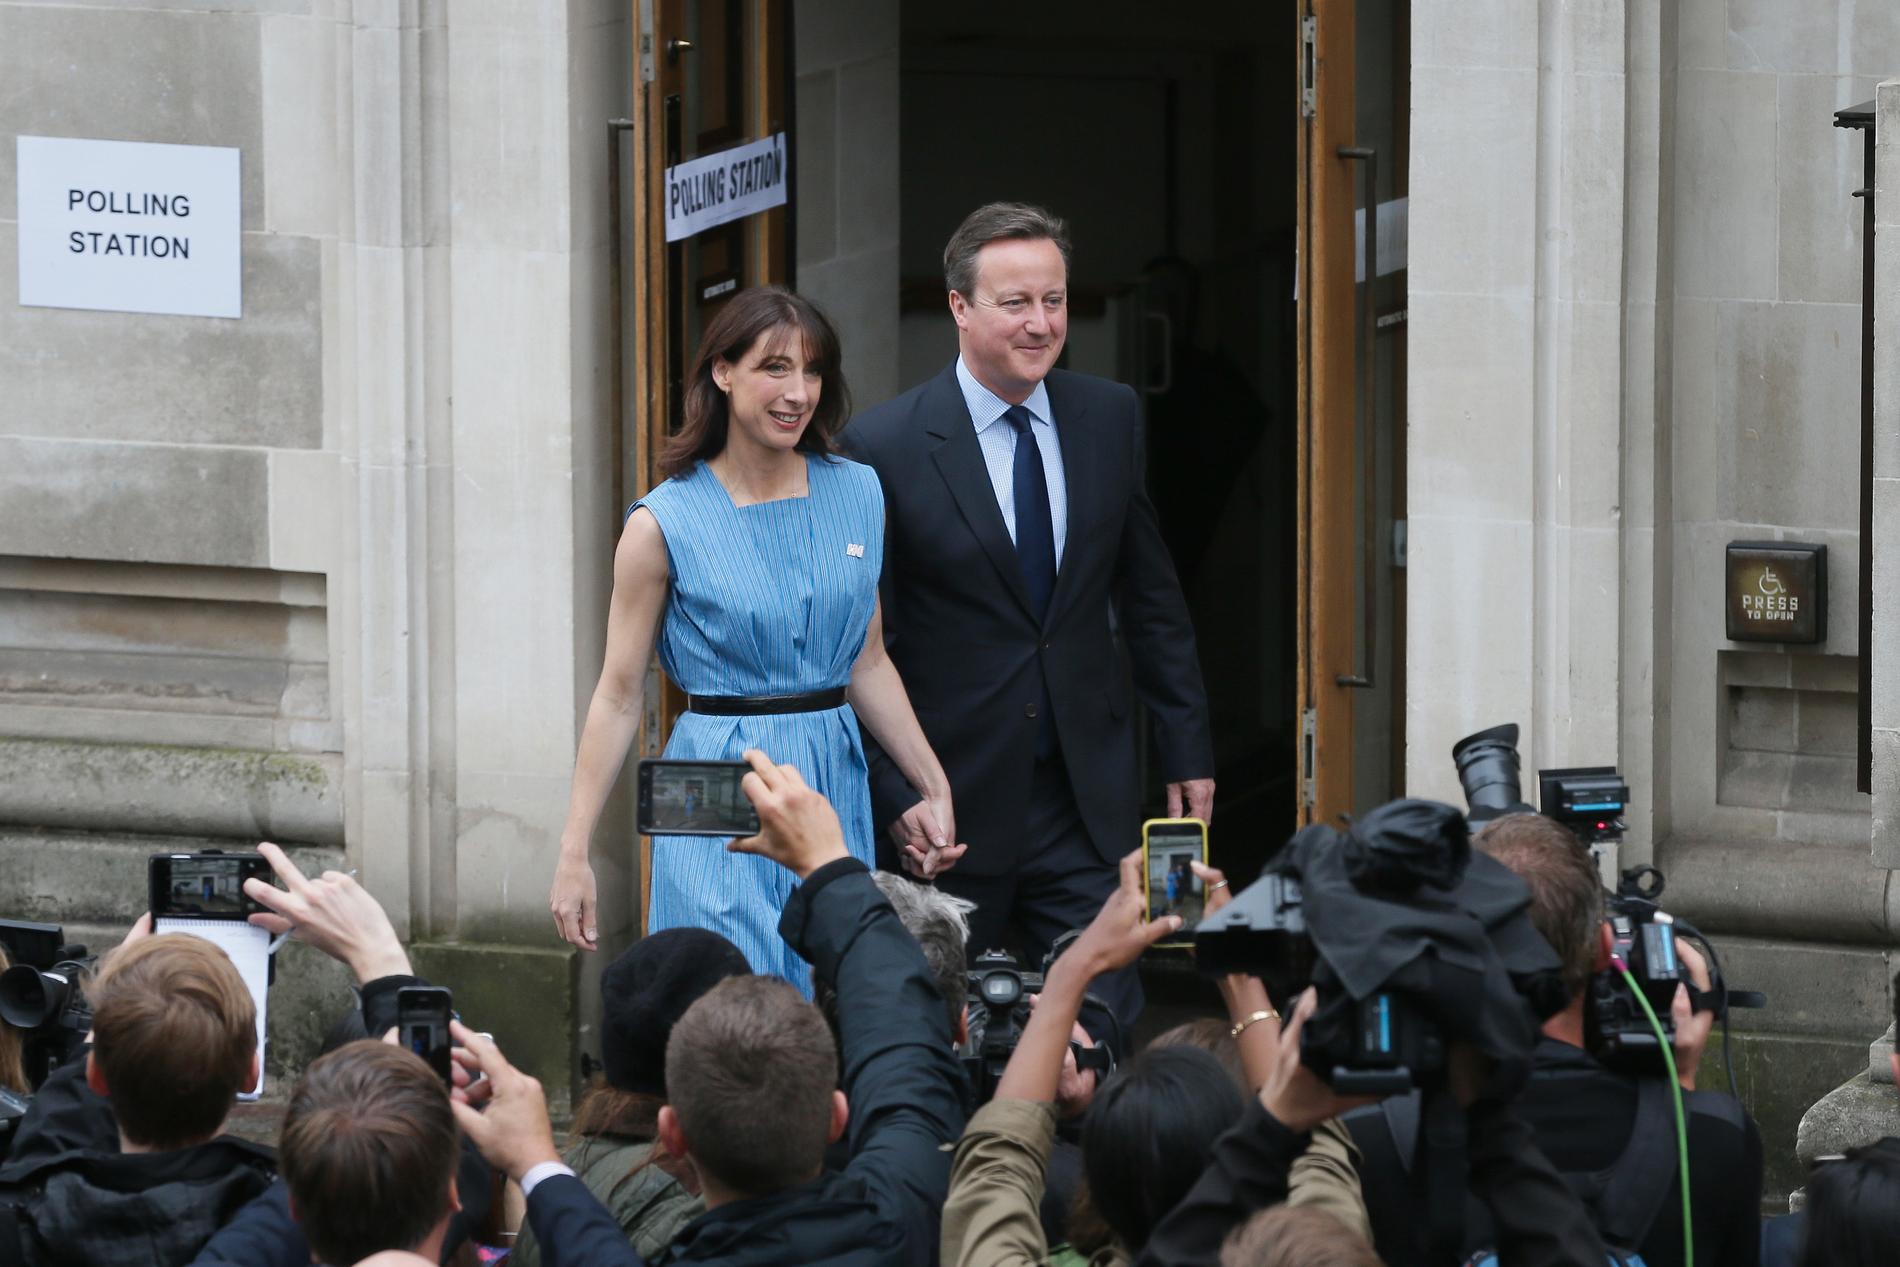 Storbritanniens premiärminister David Cameron och hans fru Samantha lämnar vallokalen efter att ha röstat på torsdagen.